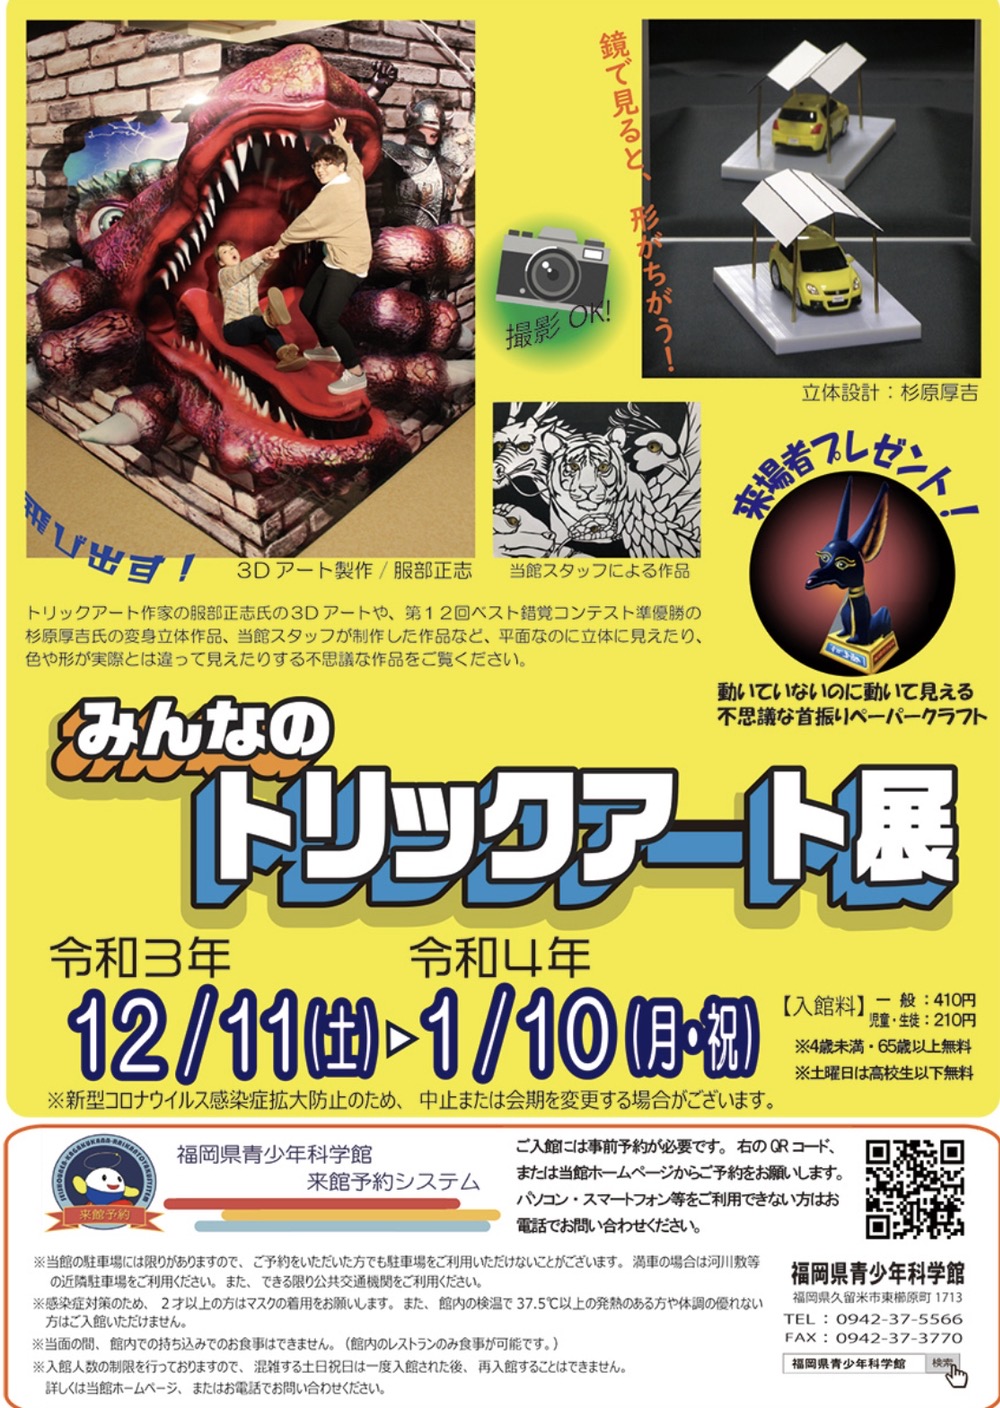 福岡県青少年科学館「みんなのトリックアート展」3Dアートや変身立体